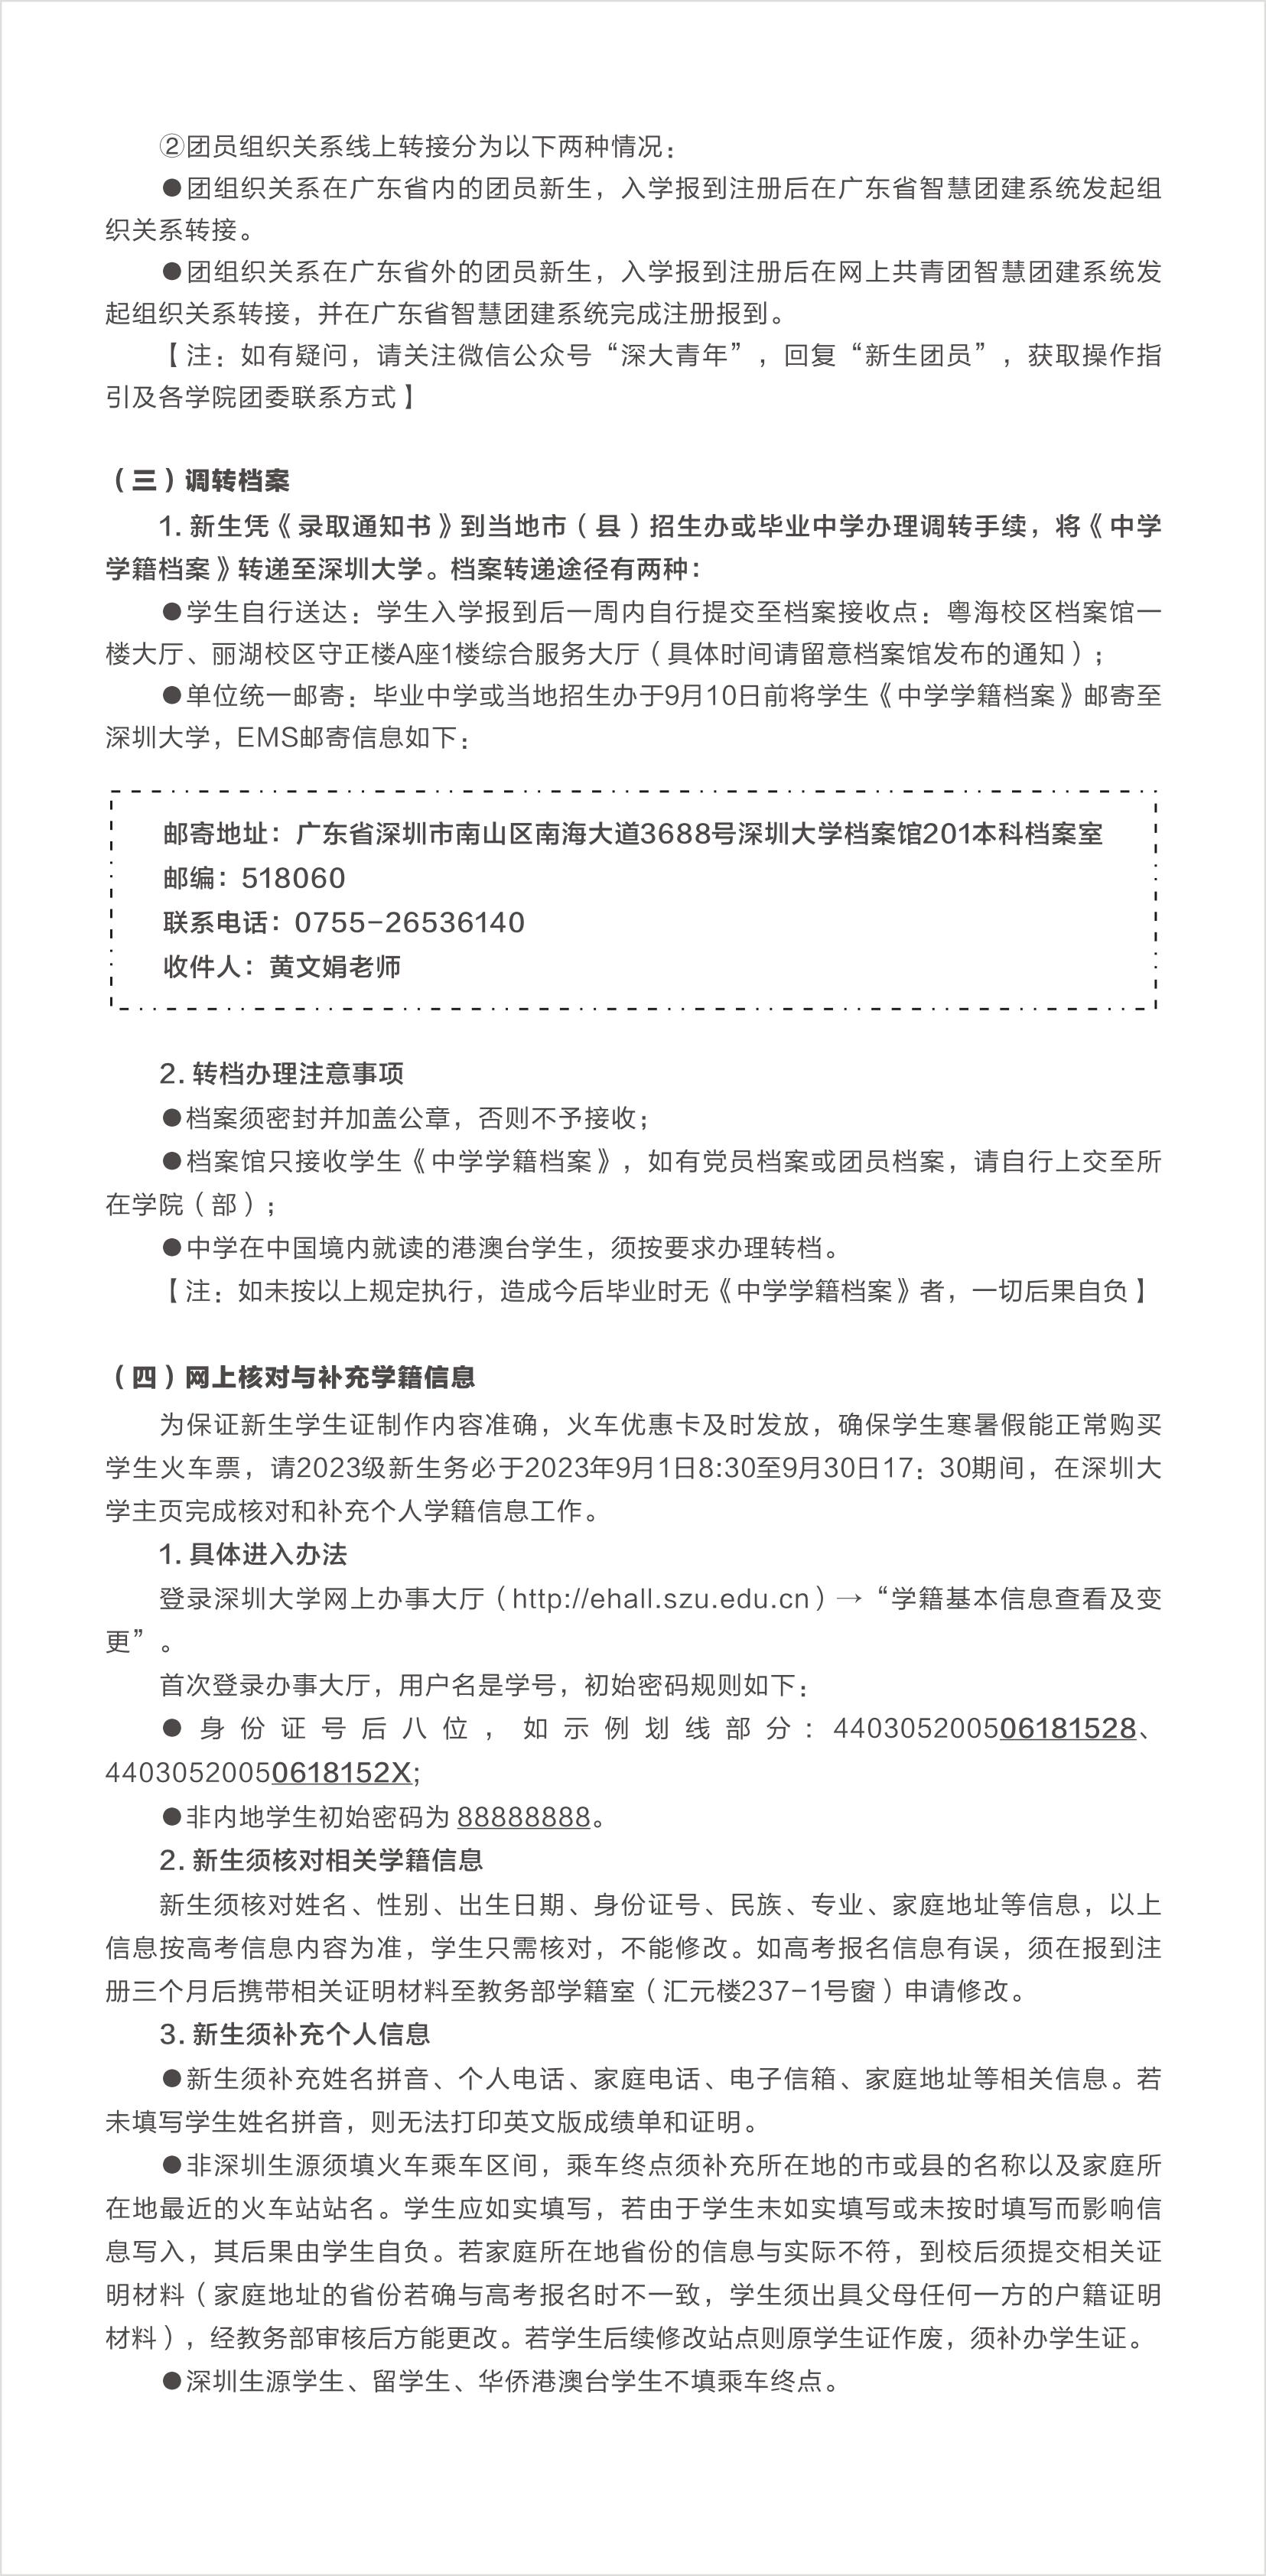 2023深圳大学新生报到时间及入学须知 迎新网入口